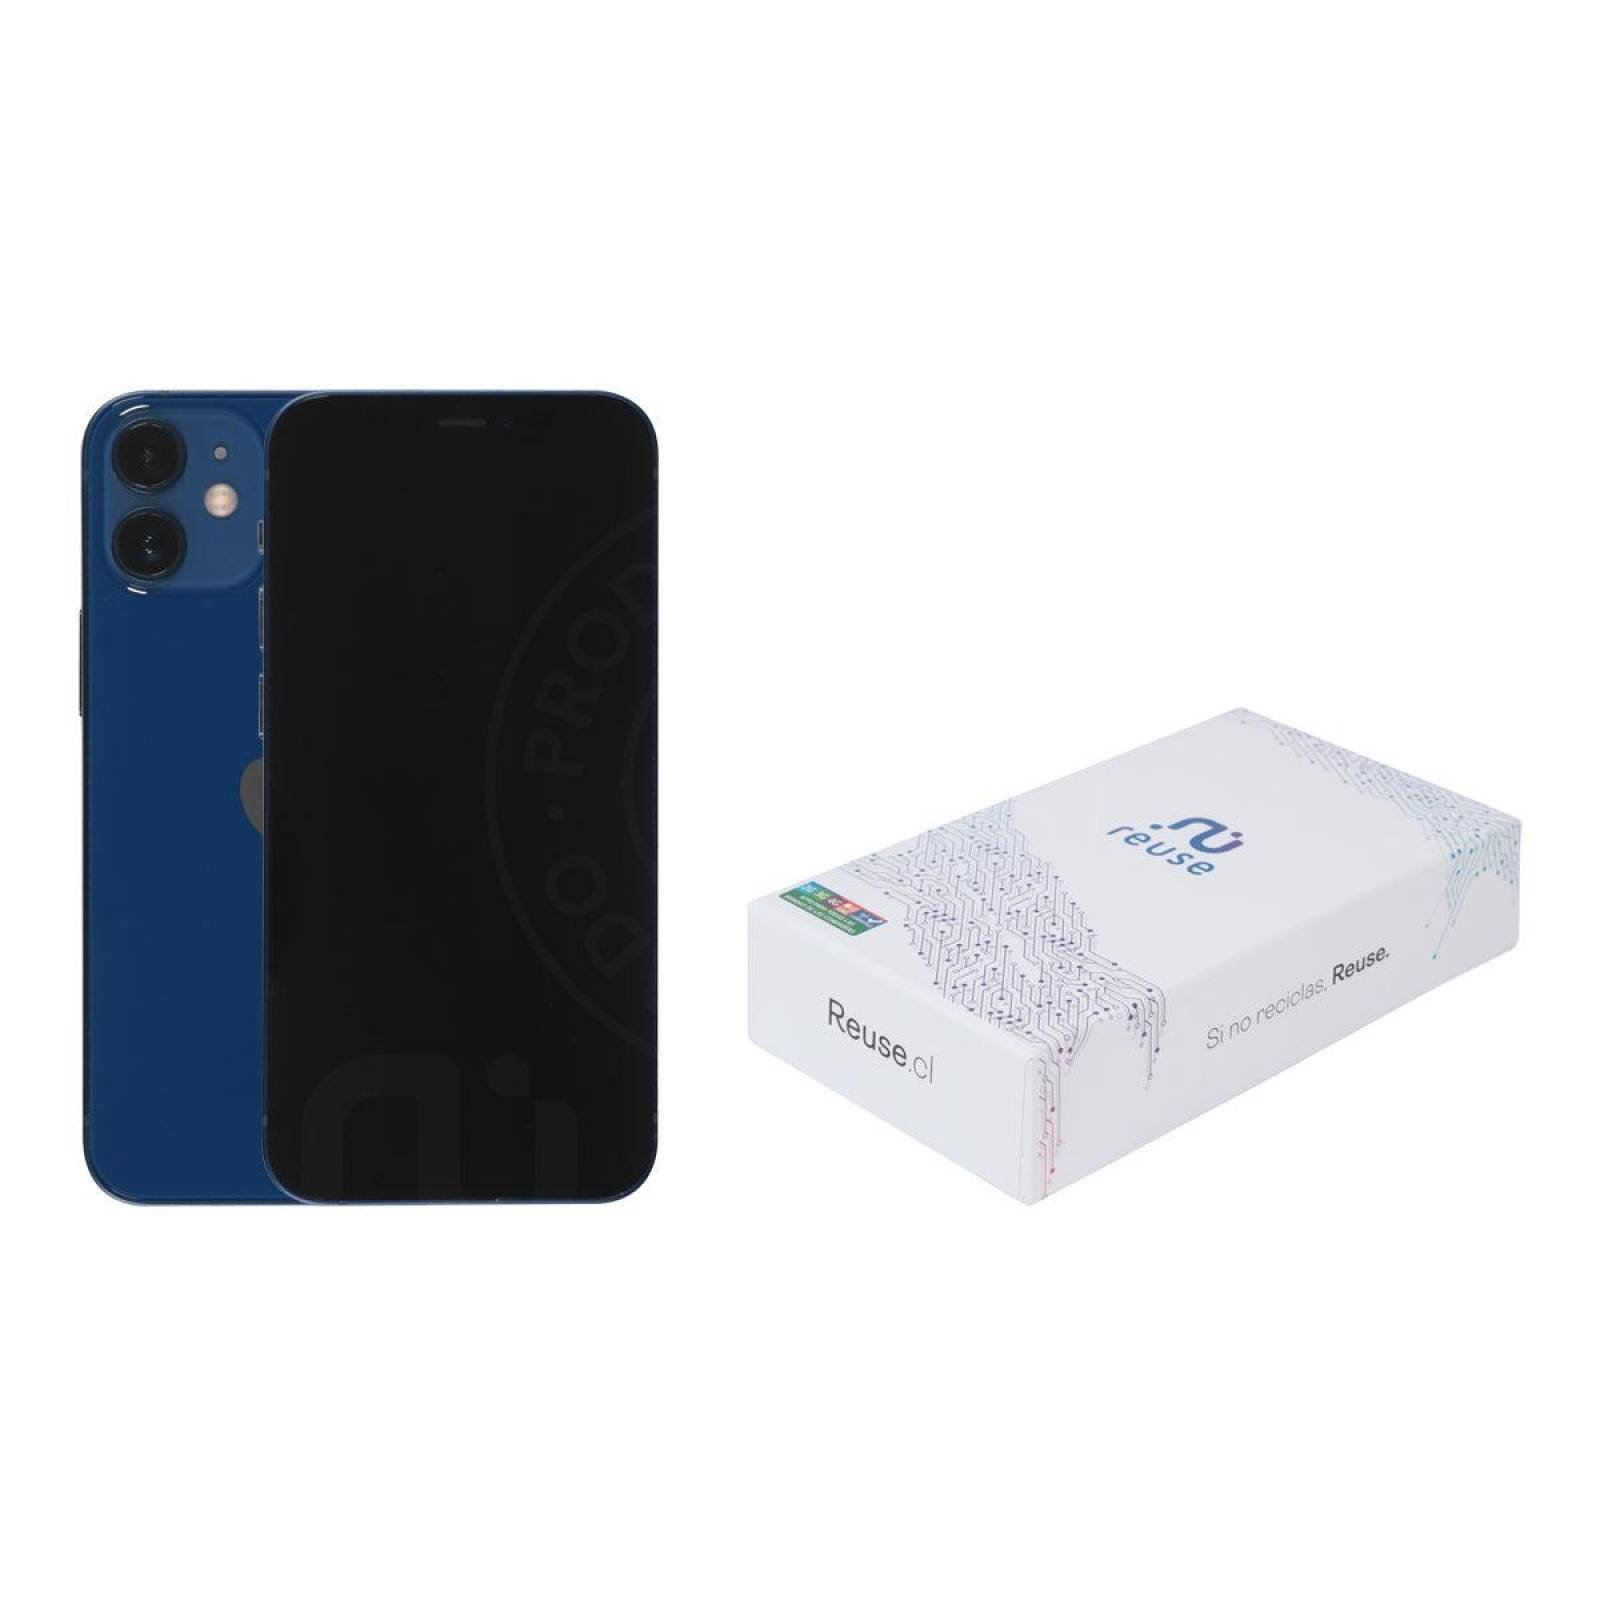 iPhone 12 mini 64GB Azul Apple Reacondicionado Grado A